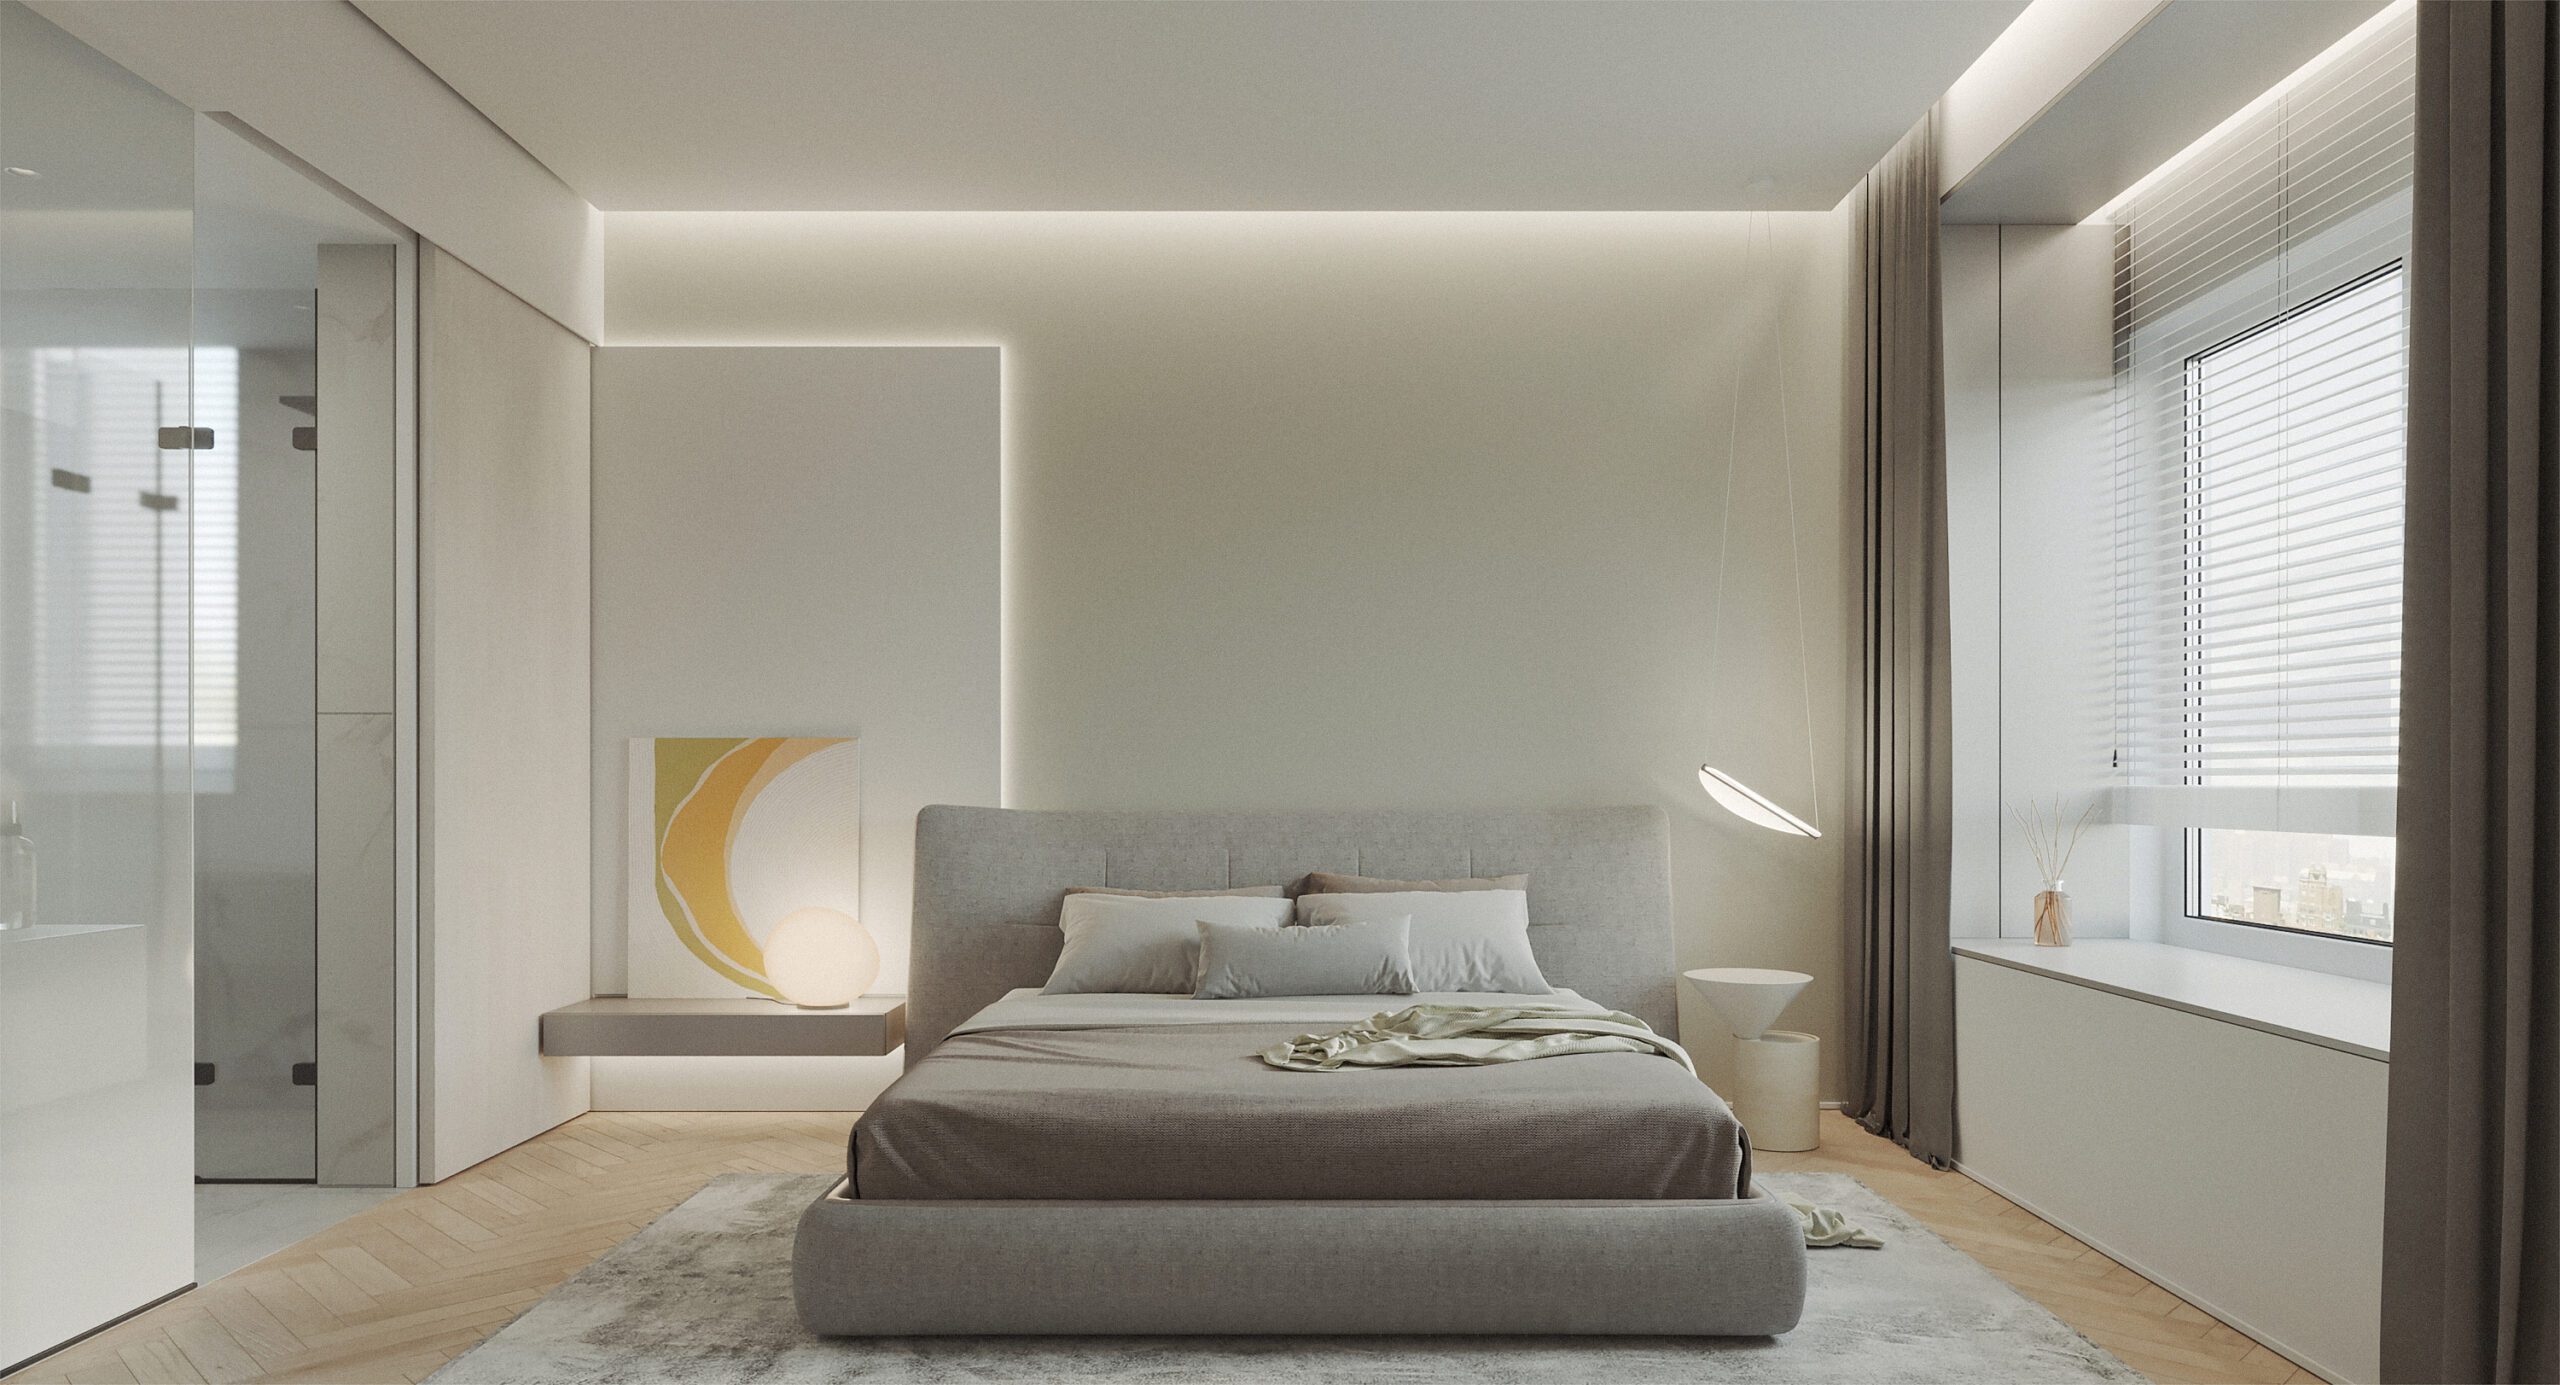 平頂搭配超薄磁吸軌道燈和偏光洗牆燈簡約實用；居中採用射燈更具設計感